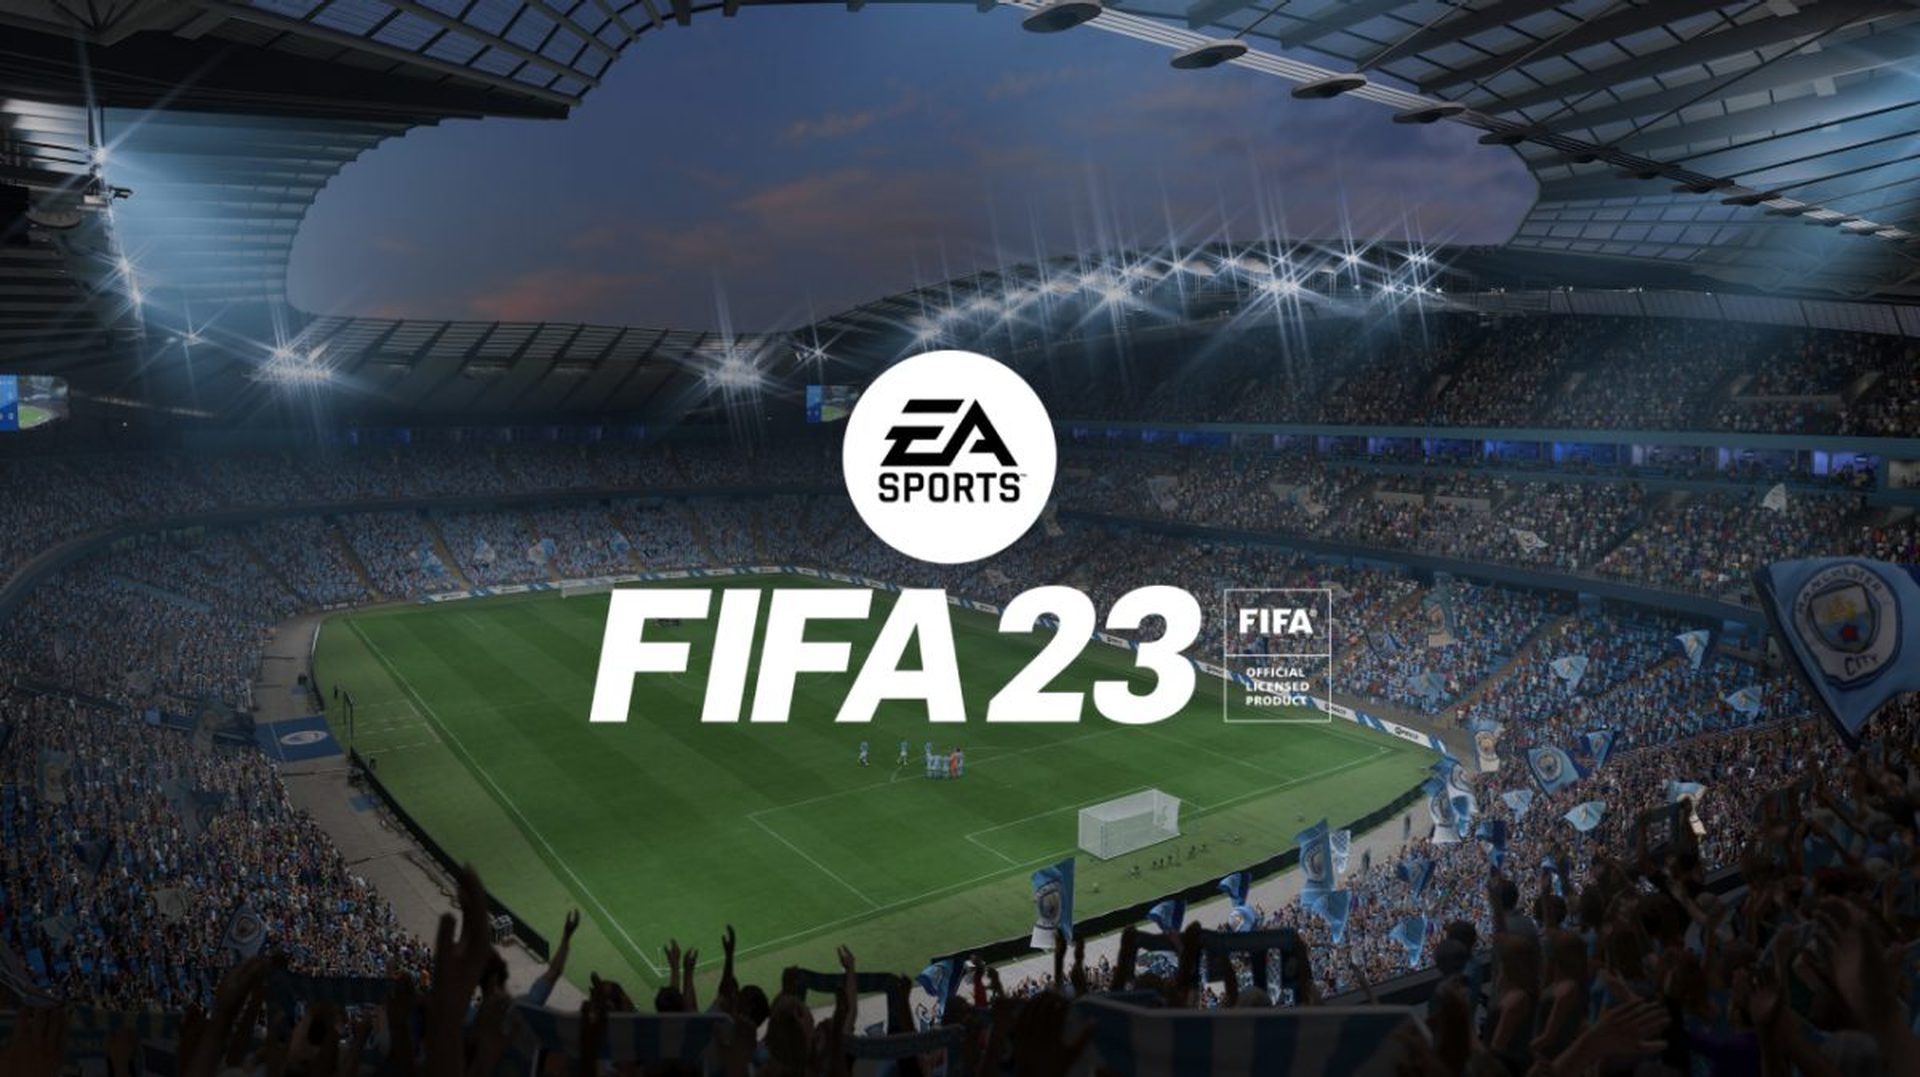 Comment faire un tacle puissant dans FIFA 23 : glissade dure et tacle debout solide